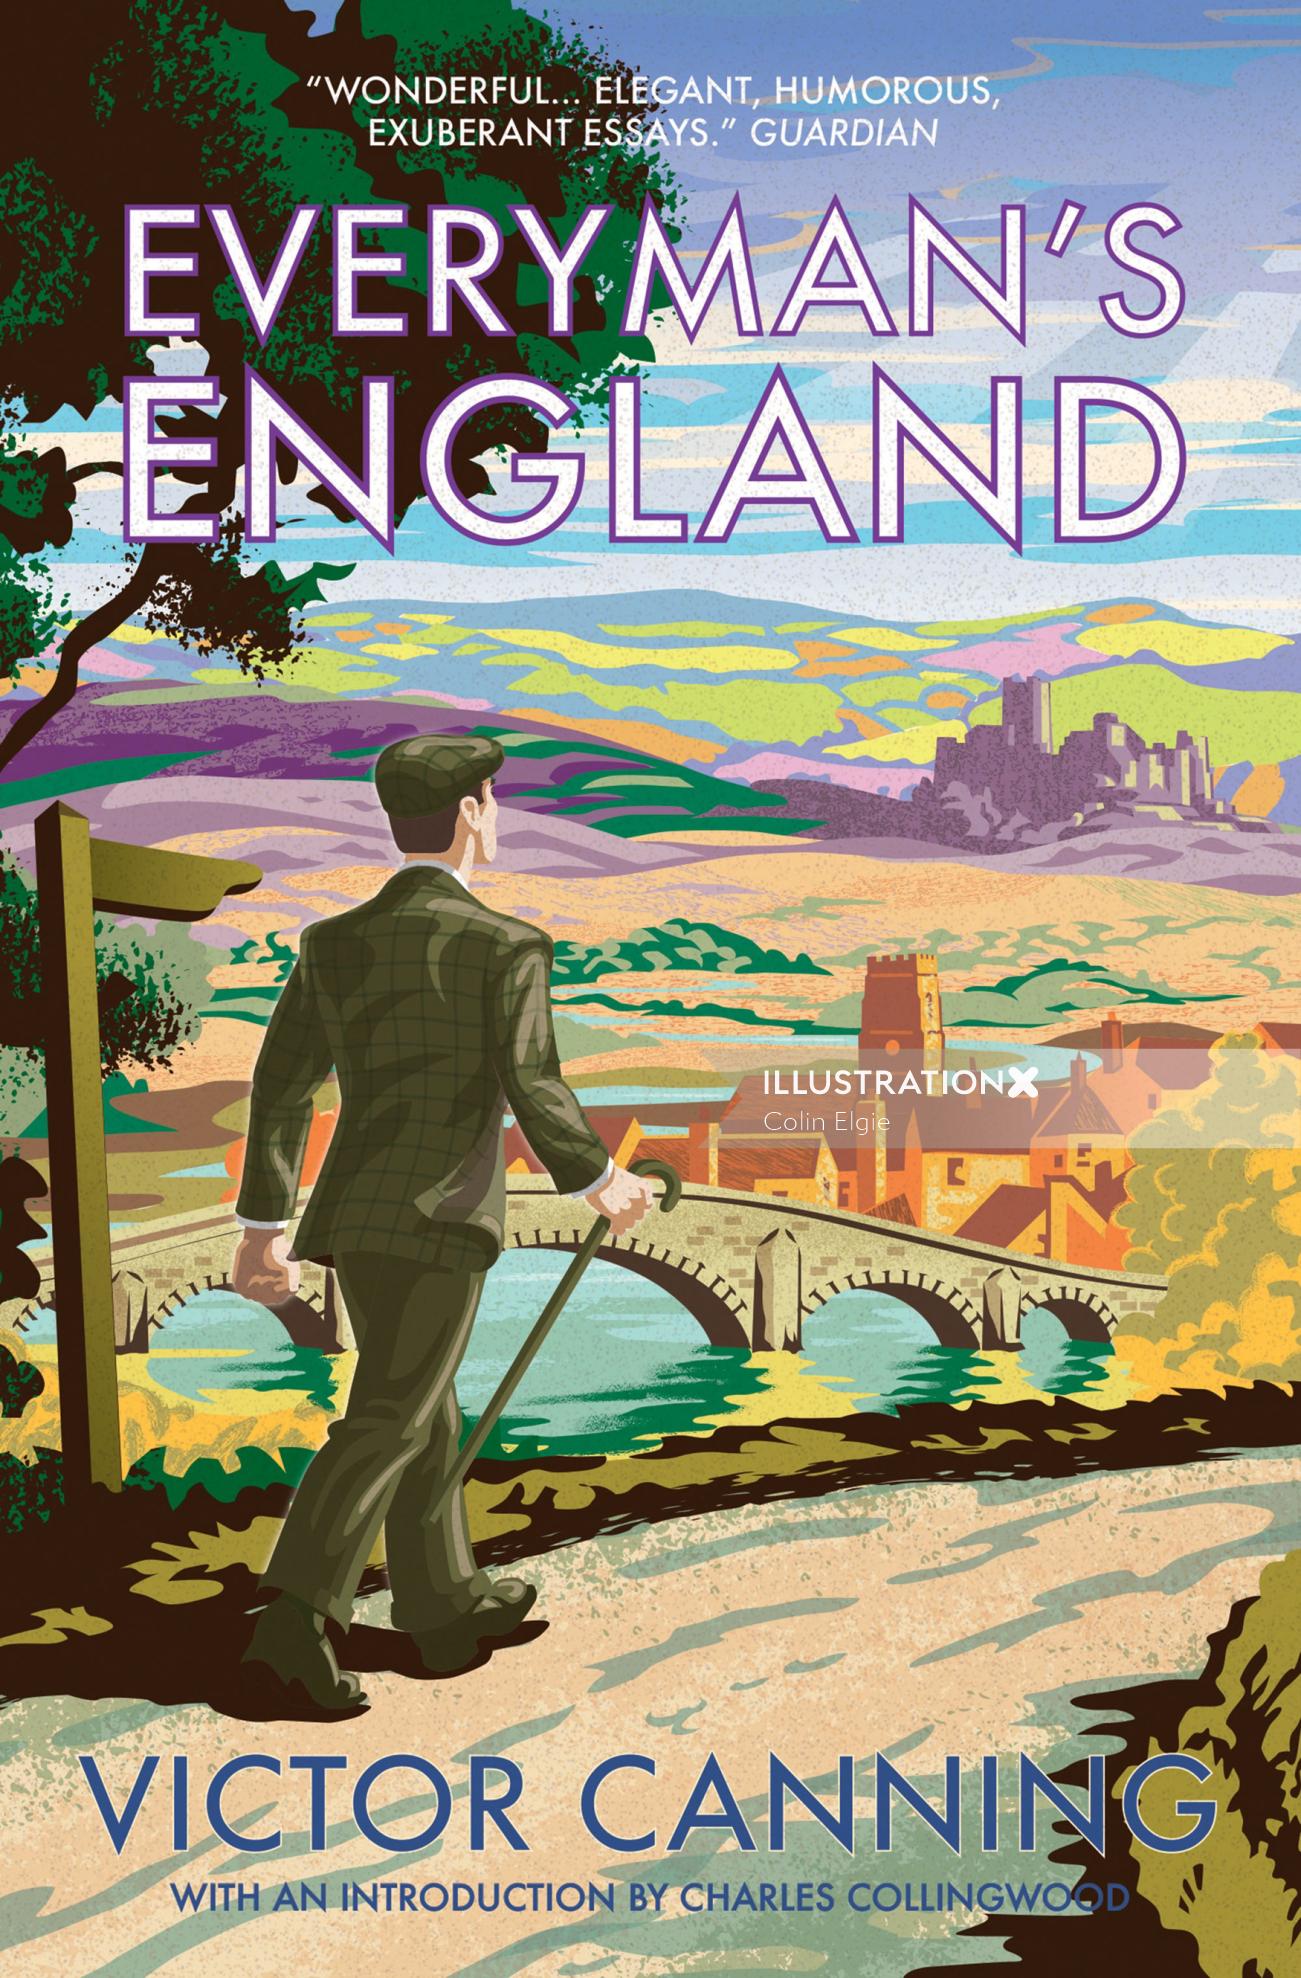 Diseño de portada de libro de inspiración retro que muestra a un hombre caminando por un camino rural en medio de un paisaje bucólico